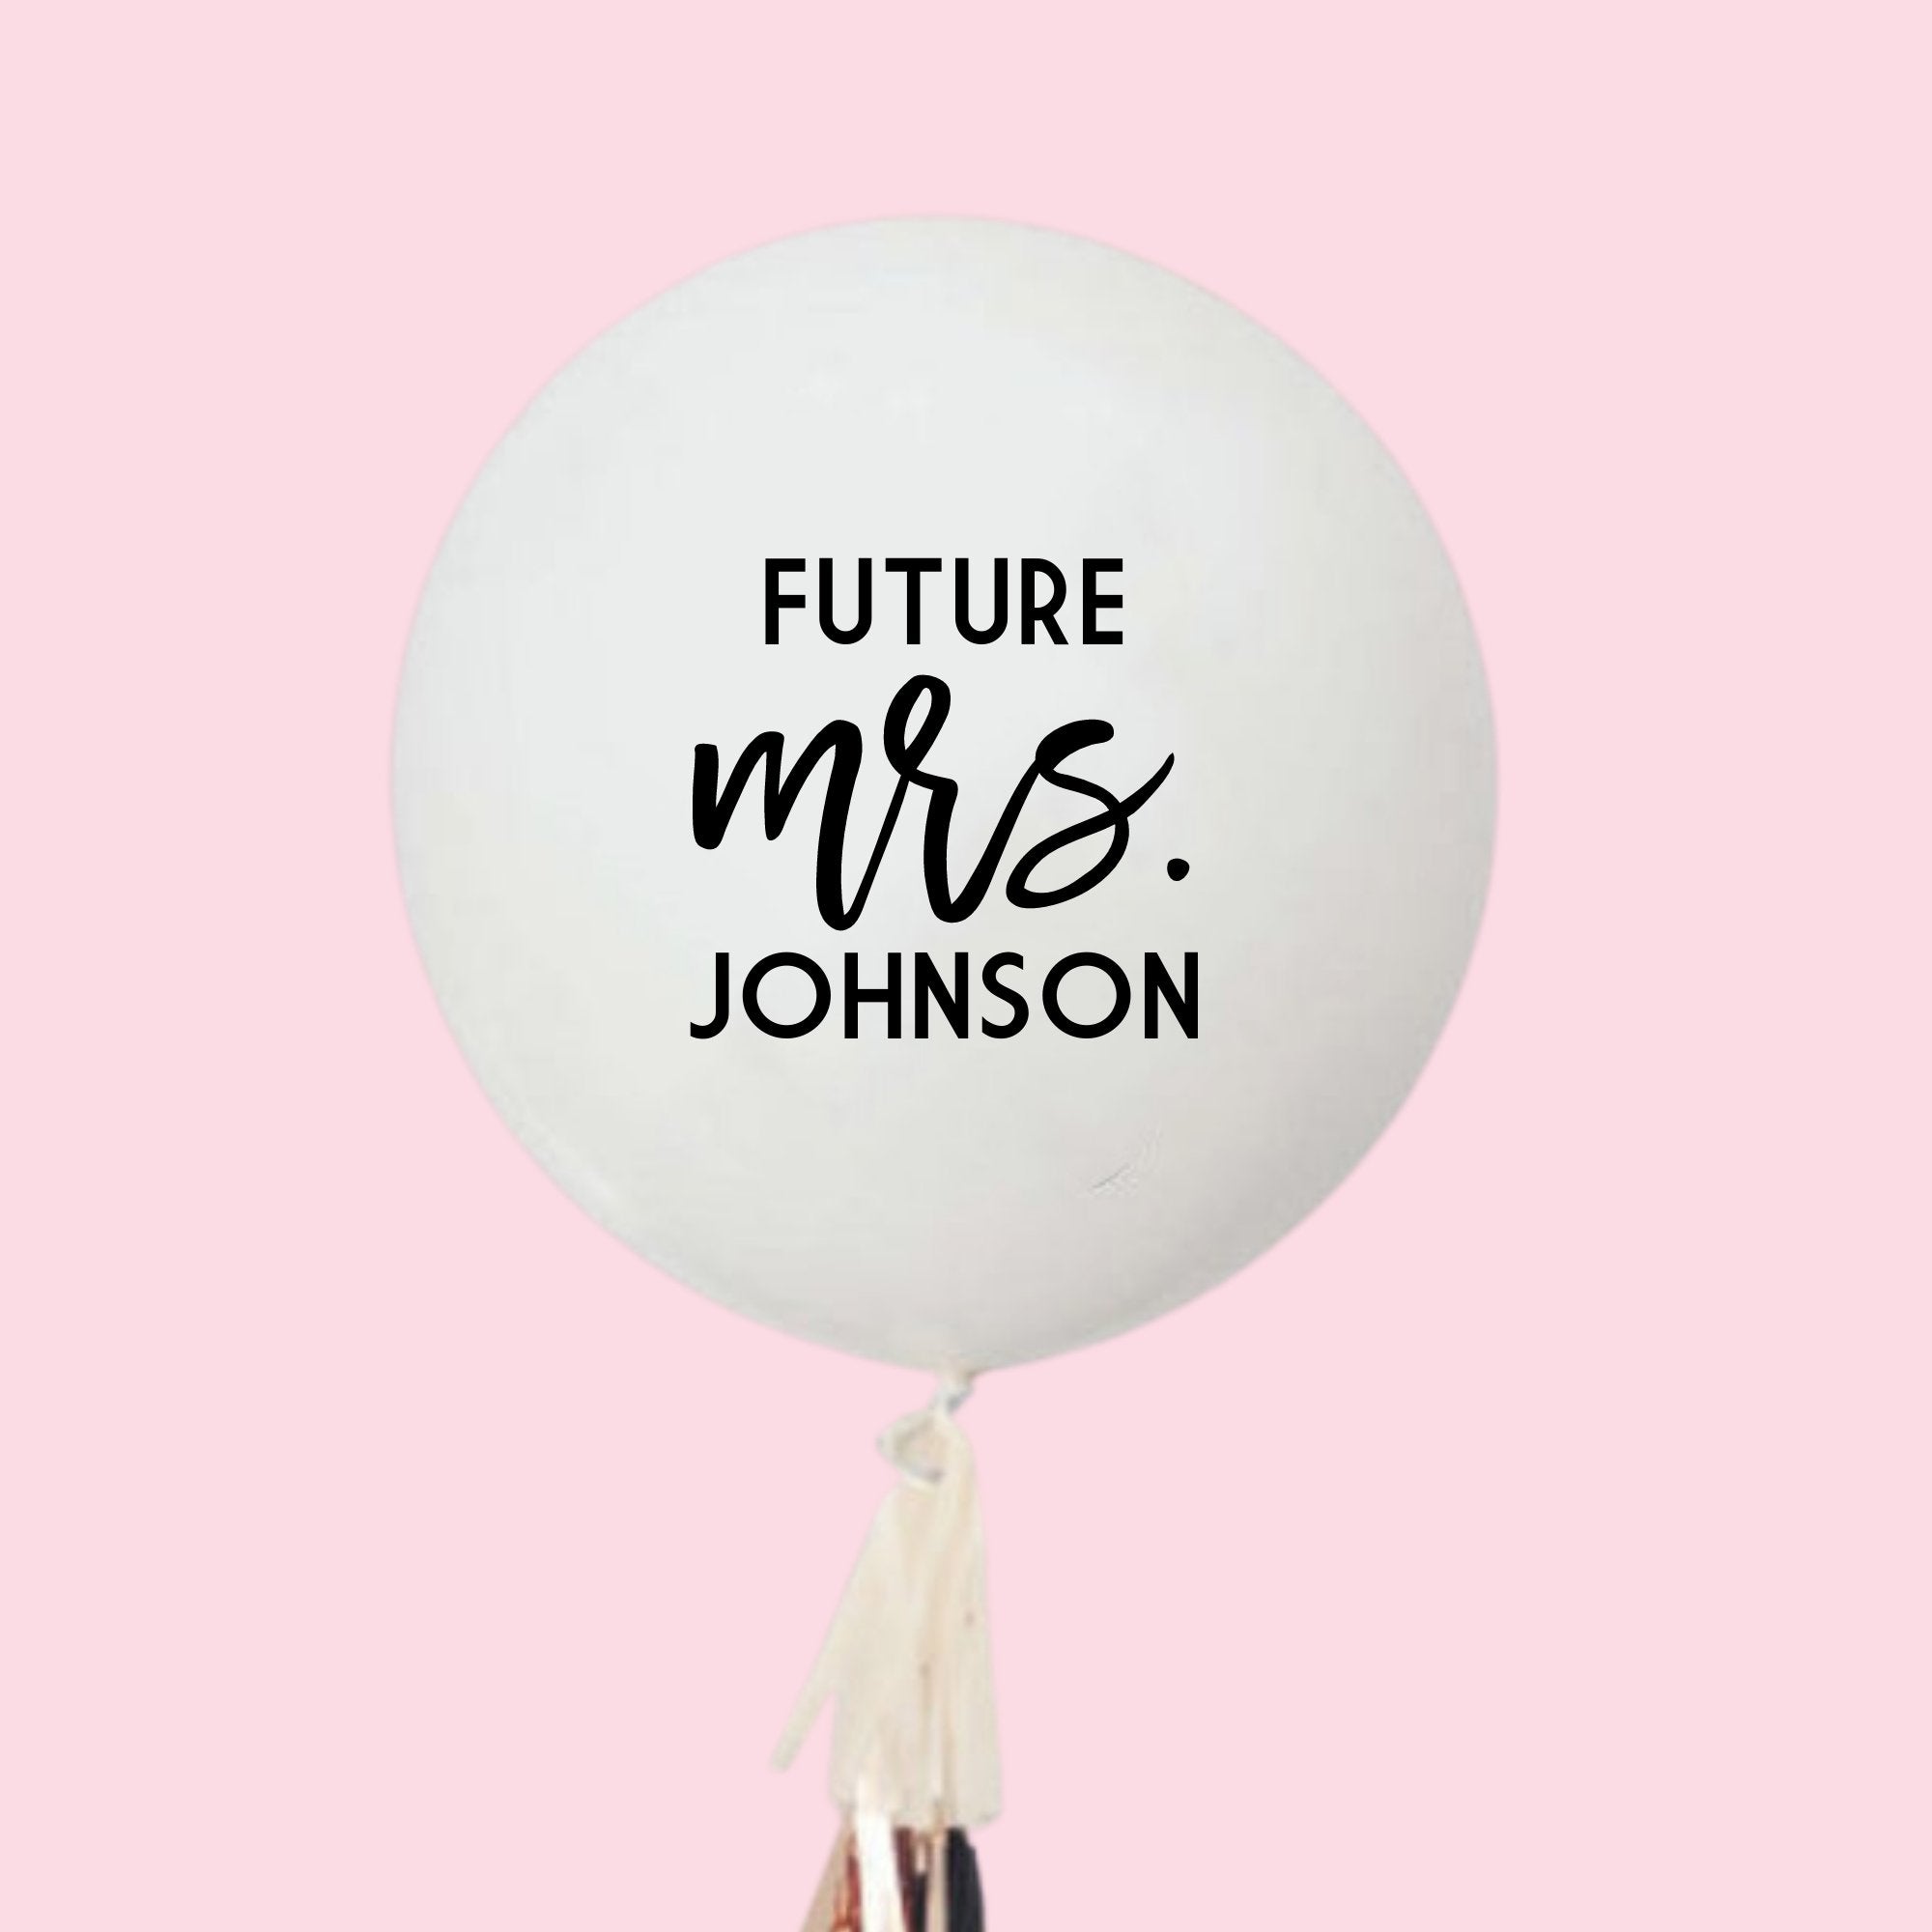 A white jumbo balloon reads "Future Mrs. Johnson"